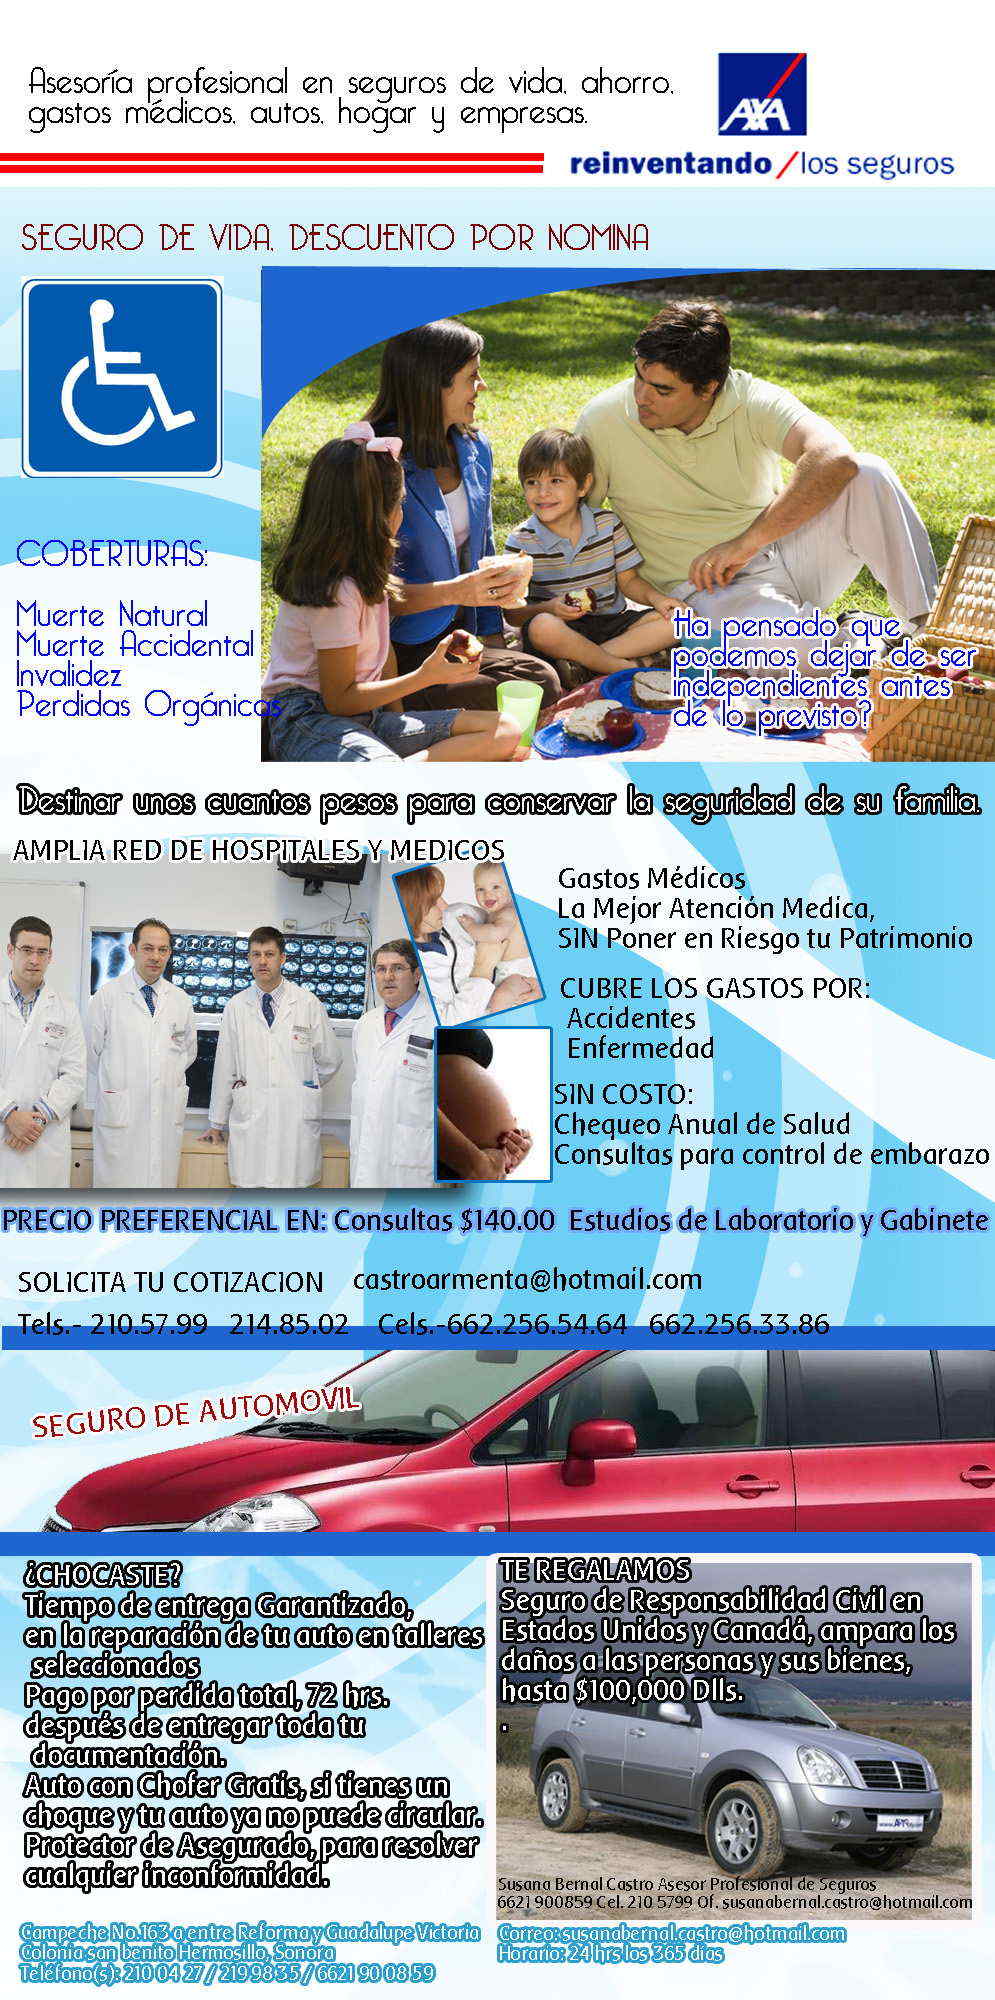 ASESOR DE SEGUROS-asesoria profesional en seguros  de vida, ahorro, gastos medicos, autos hogar y empresas.